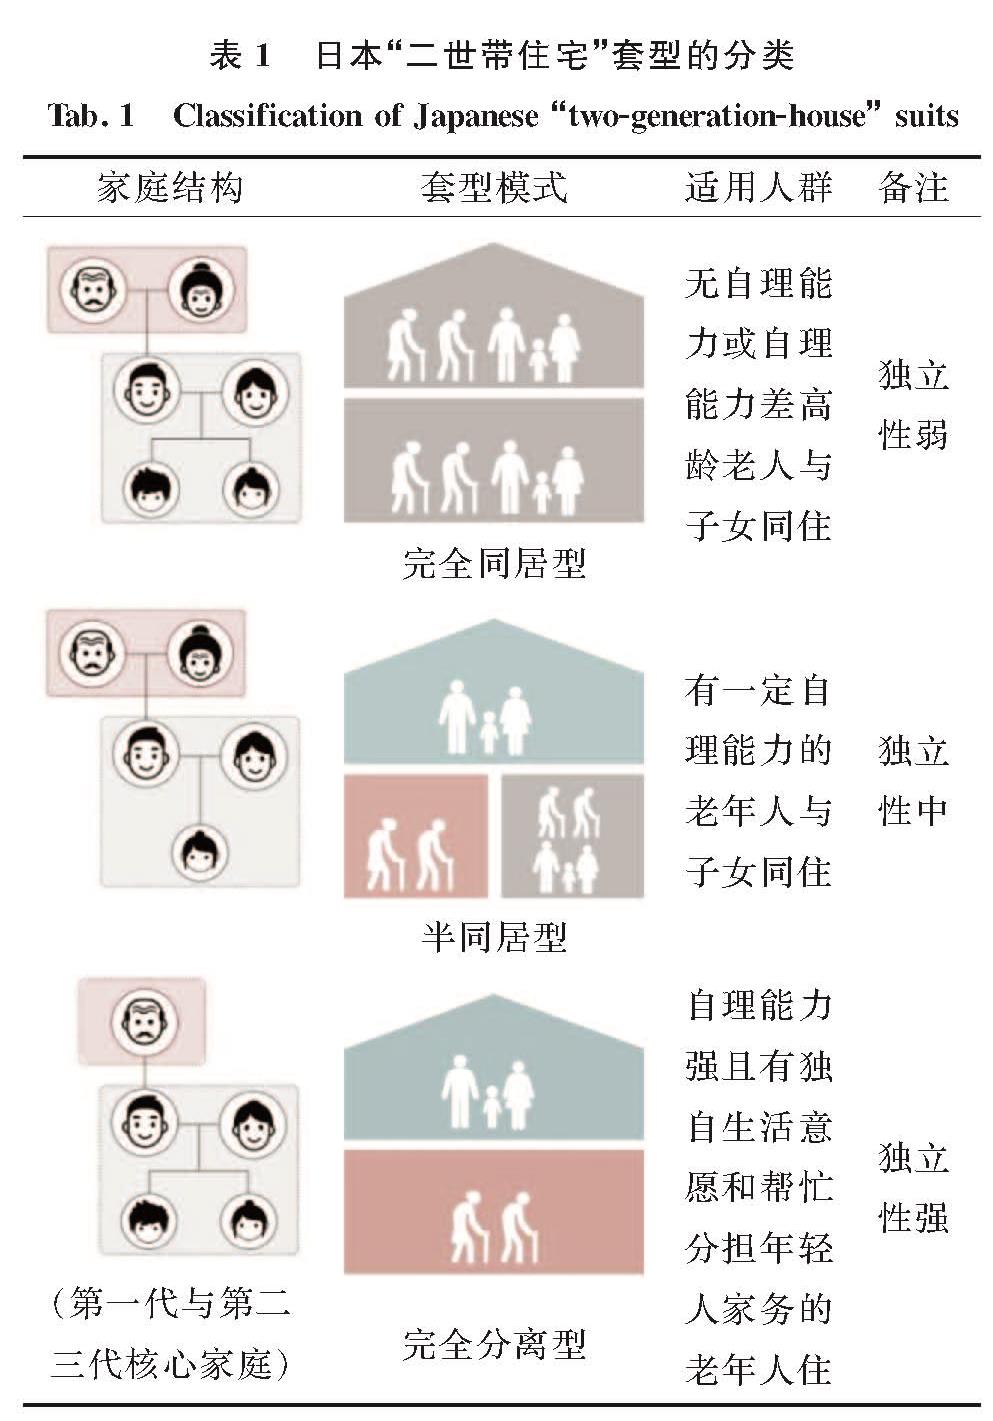 表1 日本“二世带住宅”套型的分类<br/>Tab.1 Classification of Japanese “two-generation-house” suits